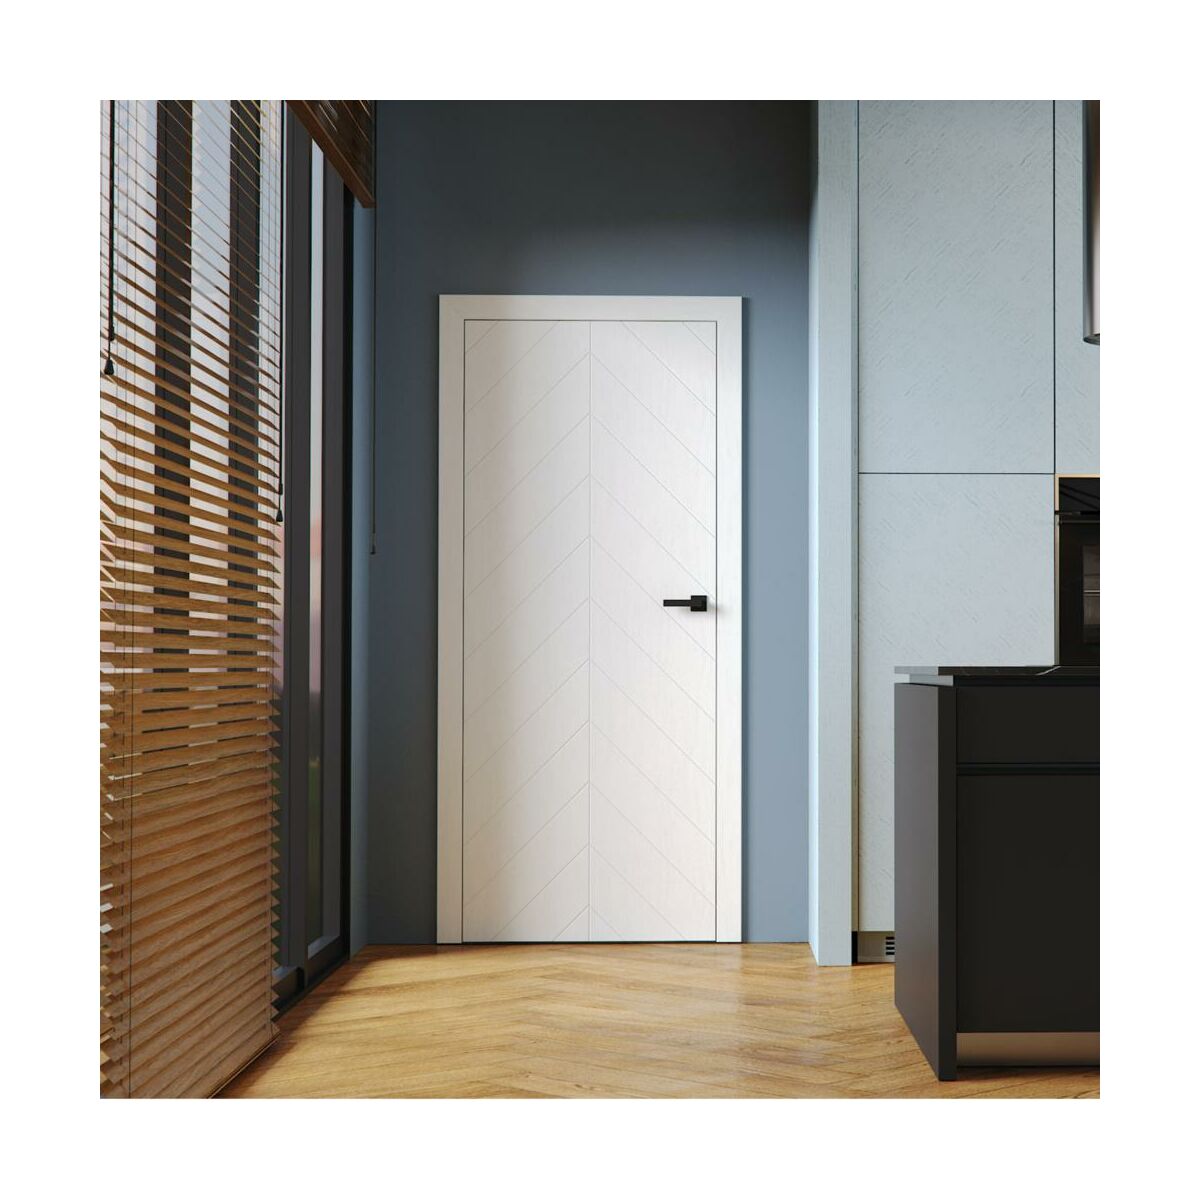 Drzwi wewnętrzne bezprzylgowe łazienkowe z podcięciem wentylacyjnym Vector J Białe 60 Prawe Porta